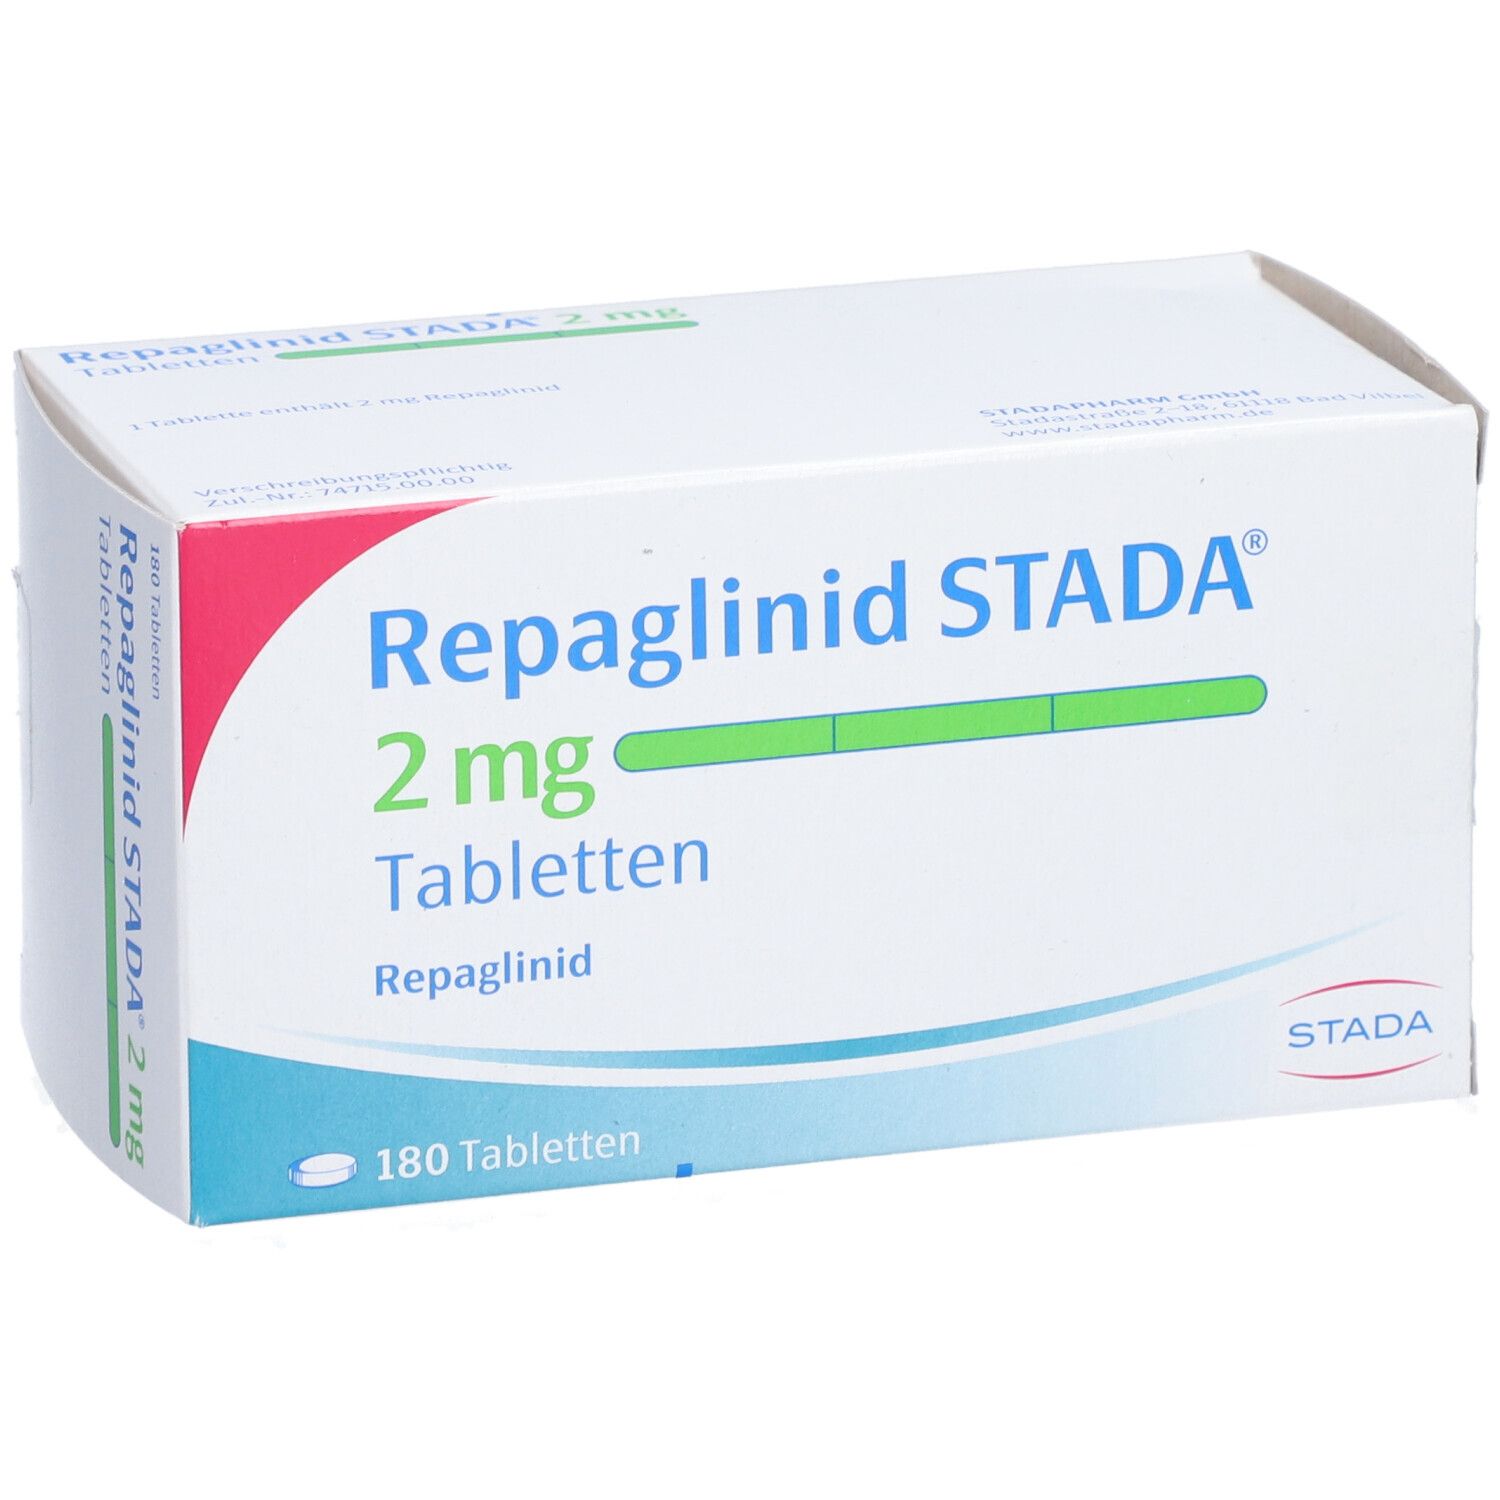 Repaglinid STADA® 2 mg